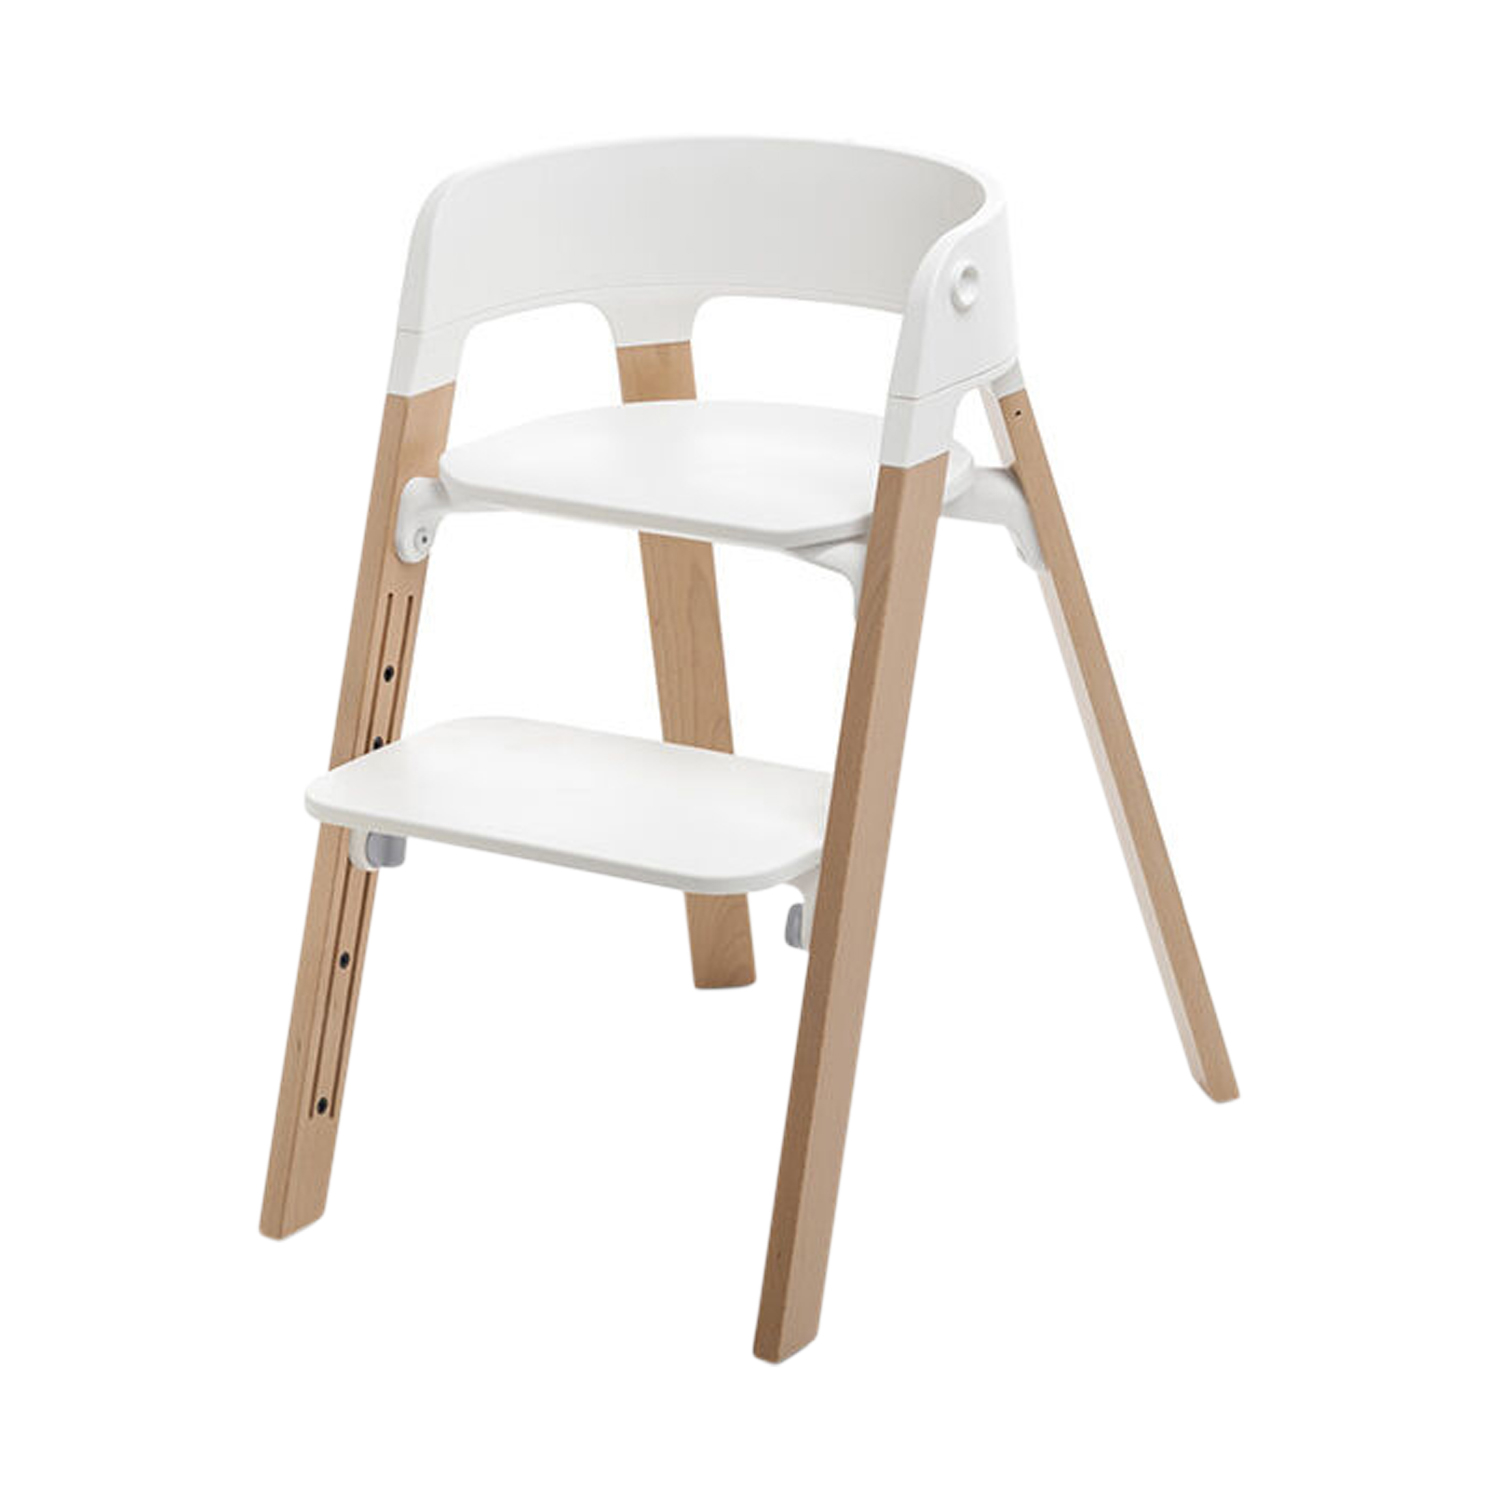 Stokke Steps™ Kinderstoel Incl. Babyset + Eetblad - White / Naturel